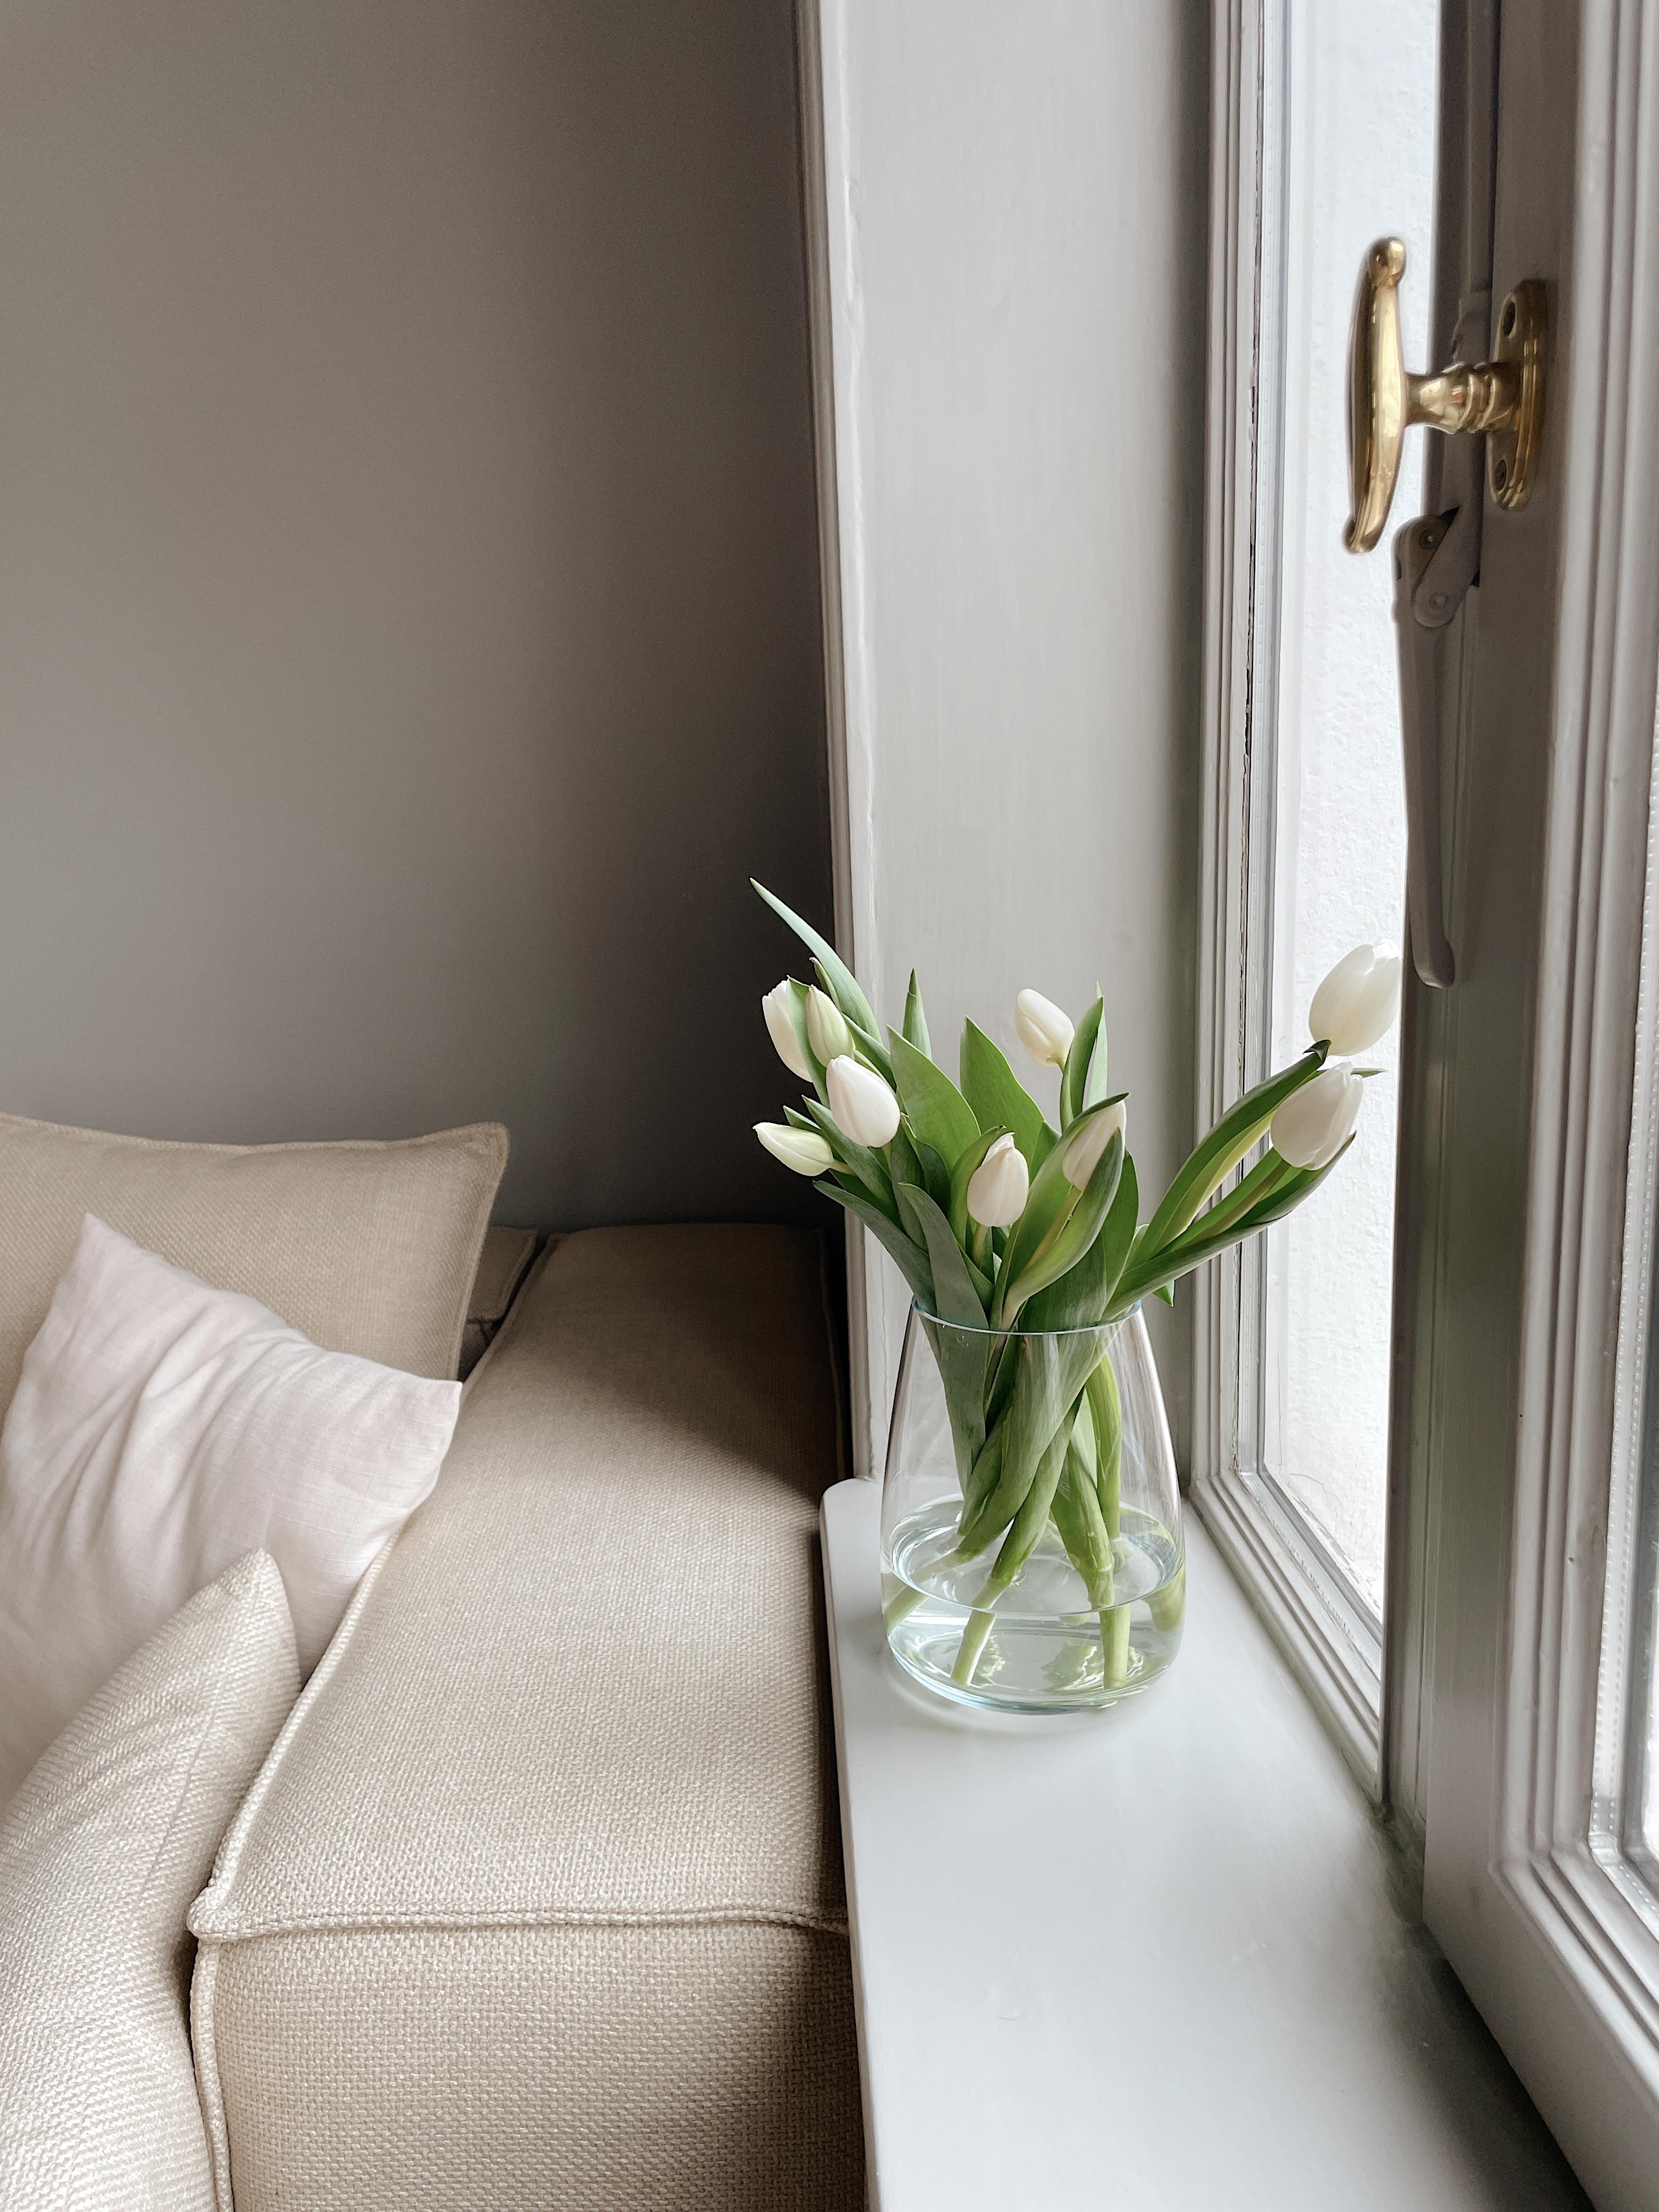 Frühlingsgefühle 🌷 #tulpen #blumen #wohnzimmer #fenster #altbau #couch